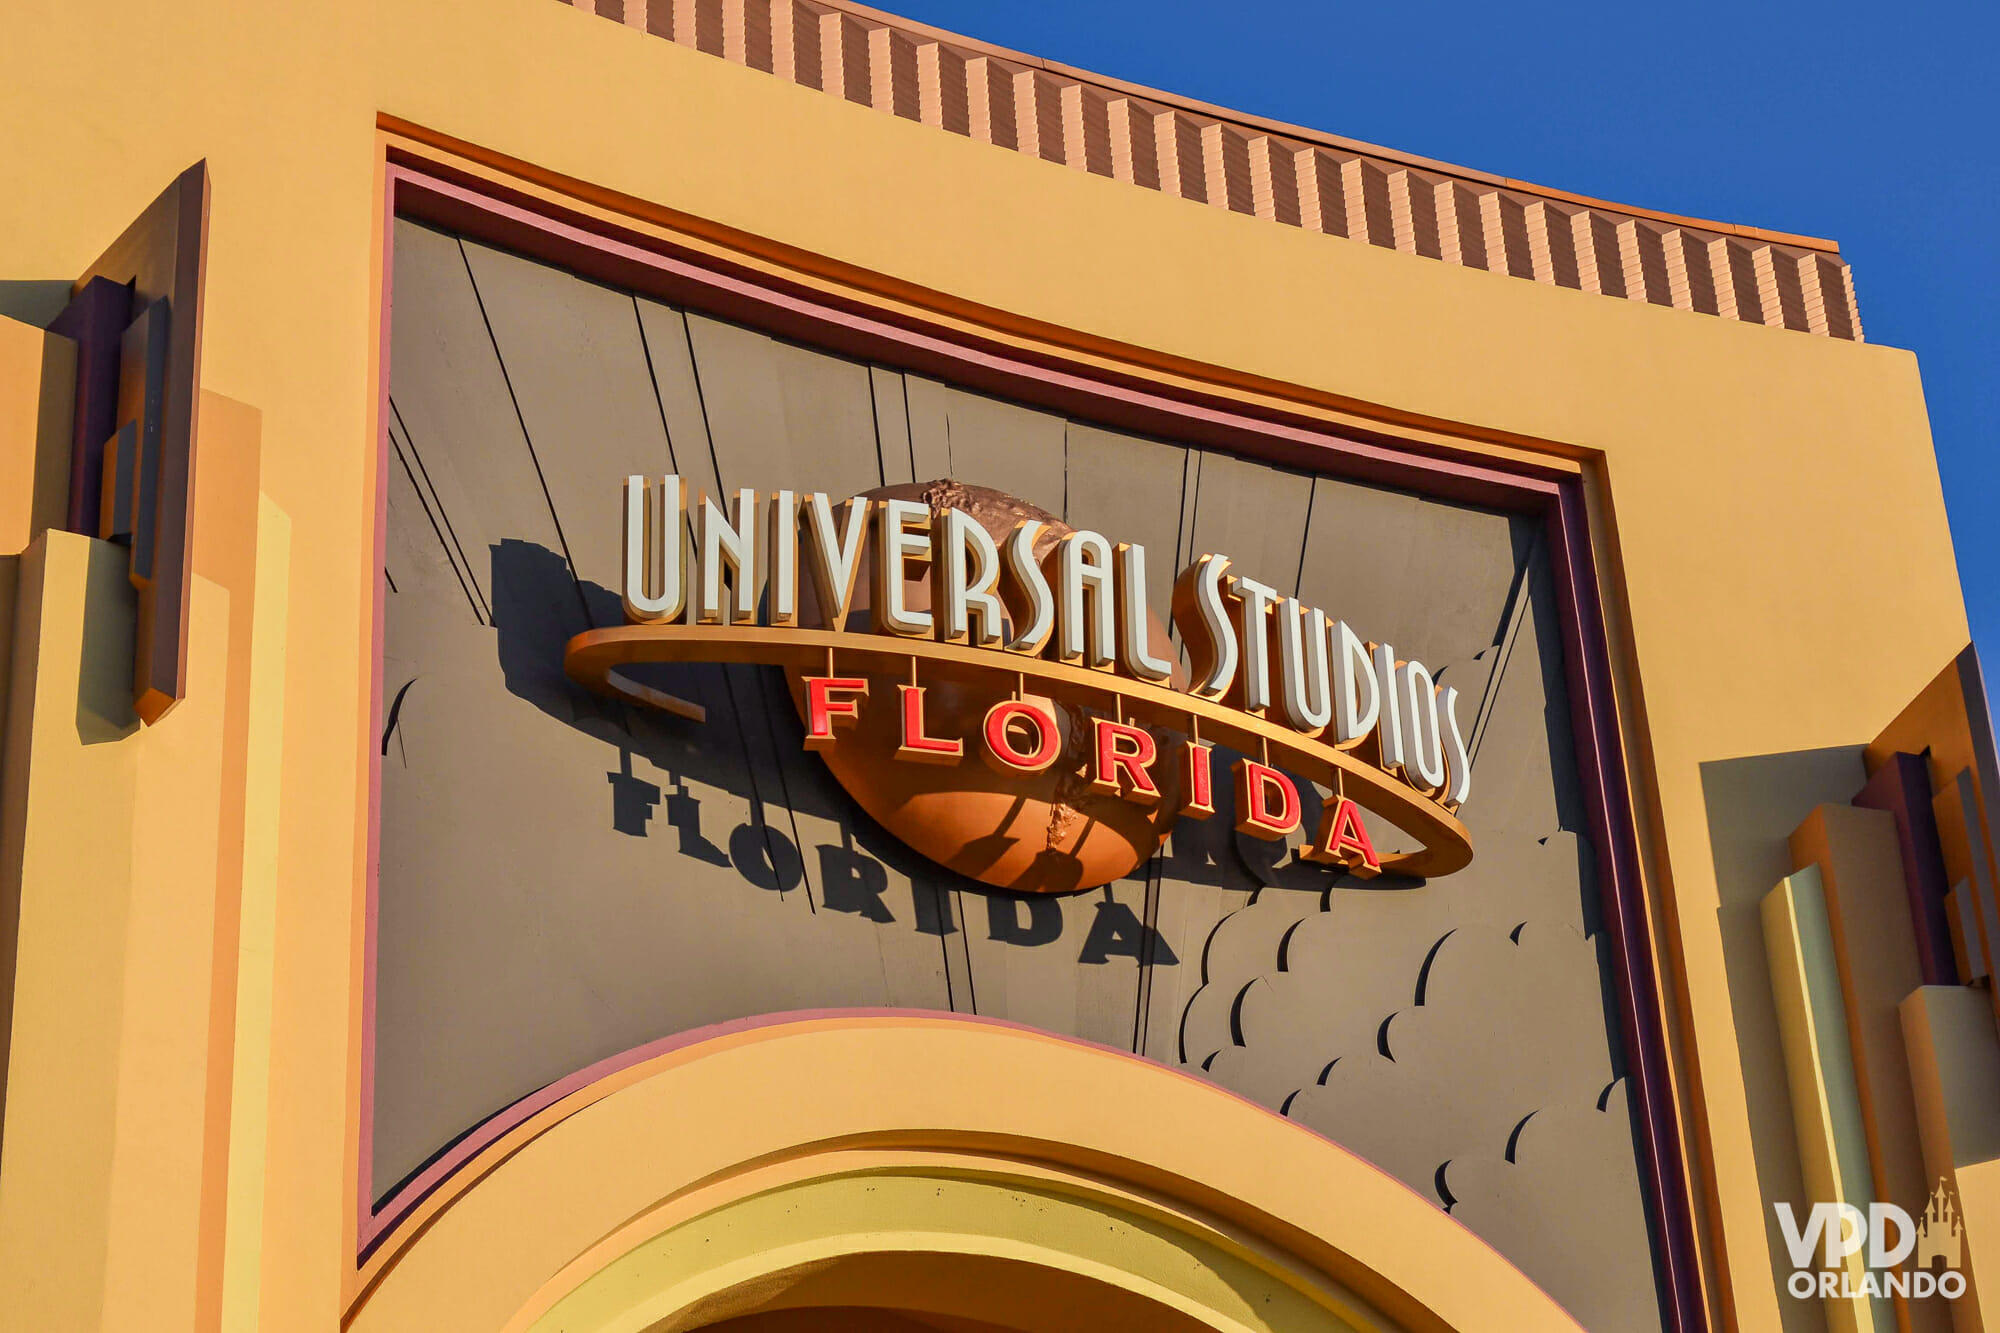 Foto do portal do parque Universal Studios Florida, que mostra a placa com o nome do parque escrito em branco e laranja. O portal é pintado em bege e laranja-claro e o céu ao fundo está bem azul.